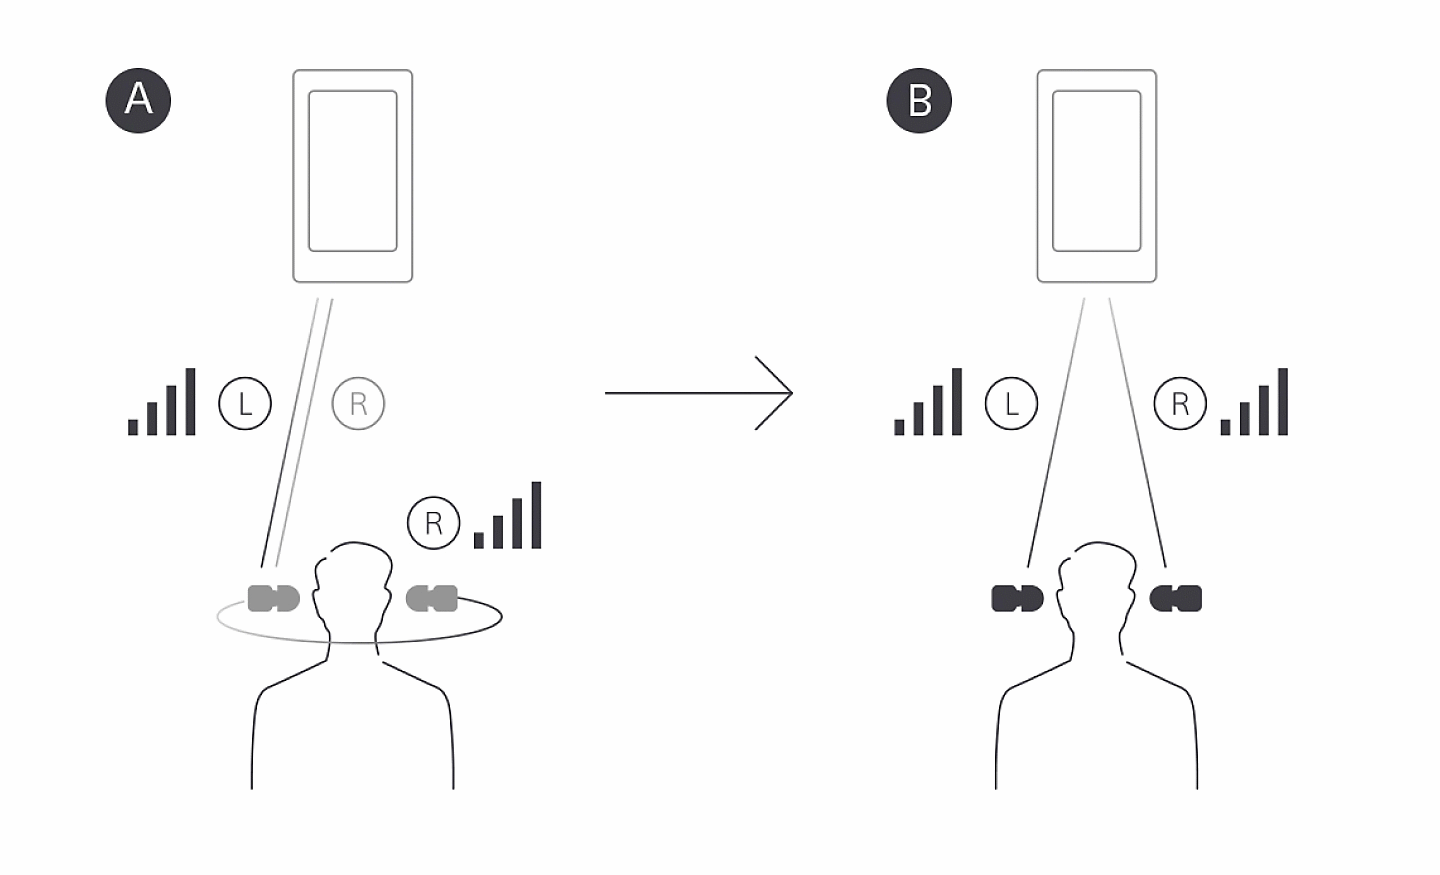 رسم توضيحي يقارن إرسال BT للترحيل من اليسار إلى اليمين على سماعات الرأس WF-1000X مع إرسال BT متزامن من اليسار/اليمين على WF-1000XM4